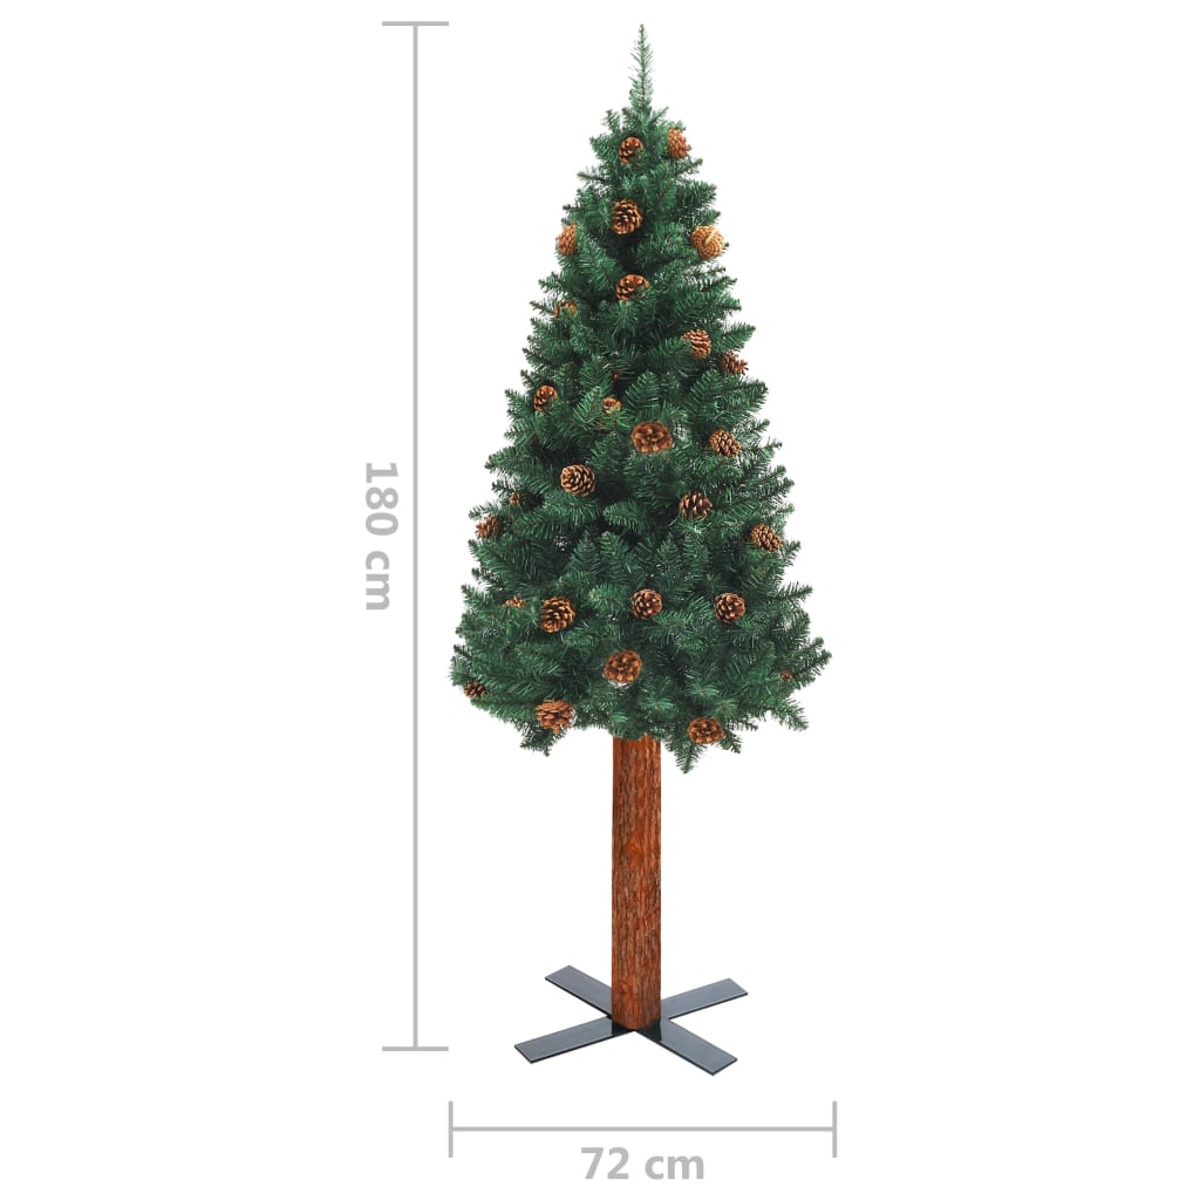 VIDAXL 3077861 Weihnachtsbaum